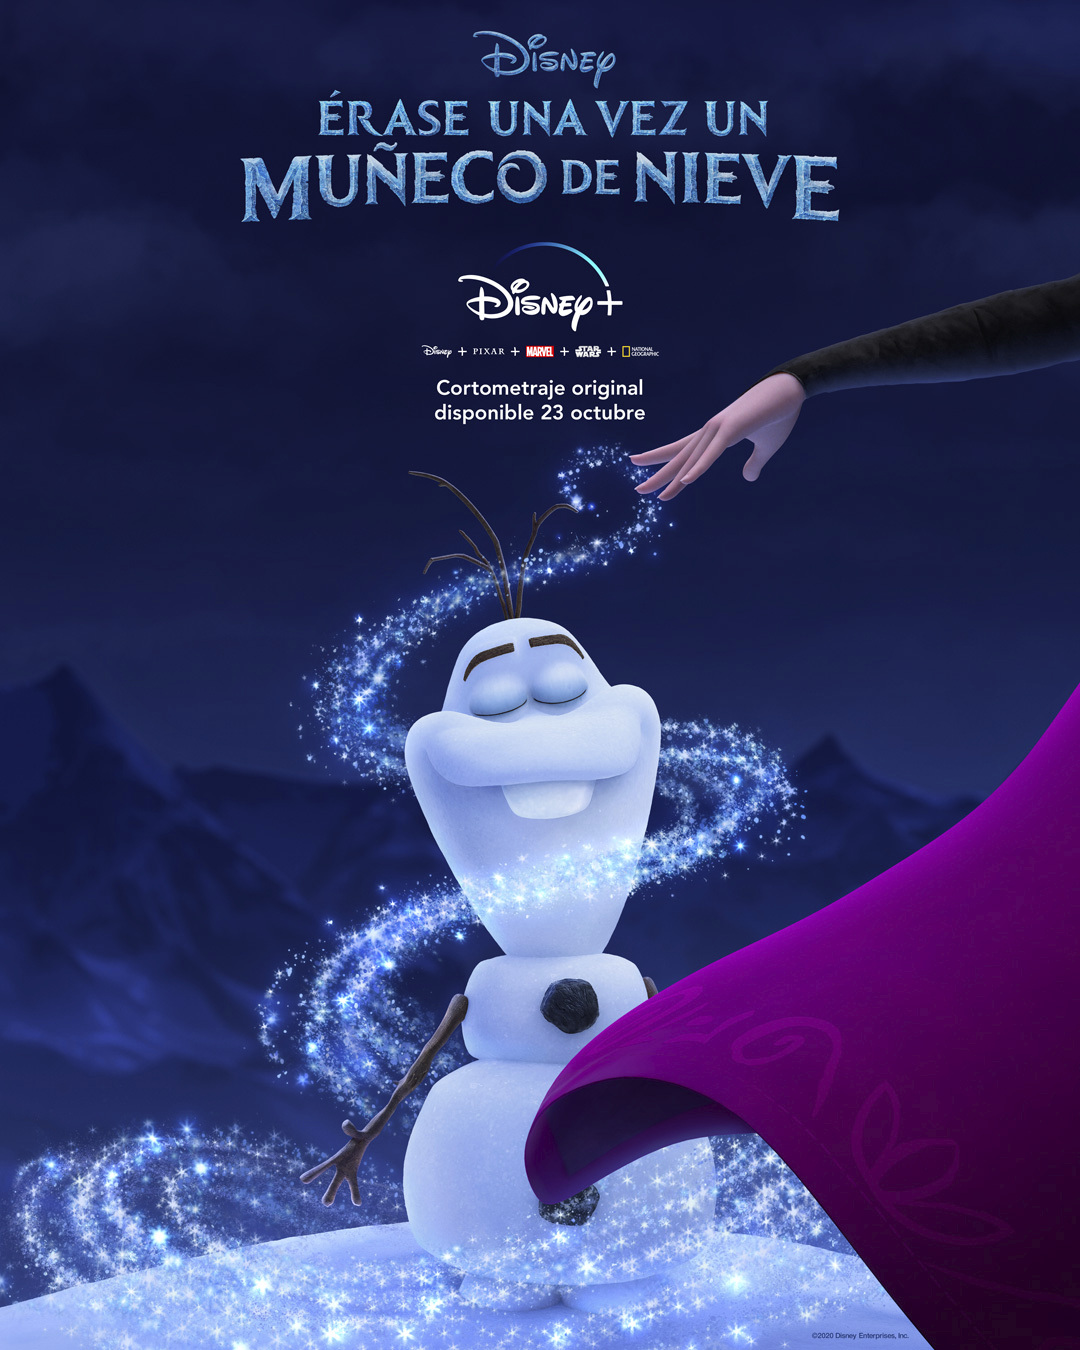 Conoce los orígenes de Olaf en 'Érase una vez un muñeco de Nieve'